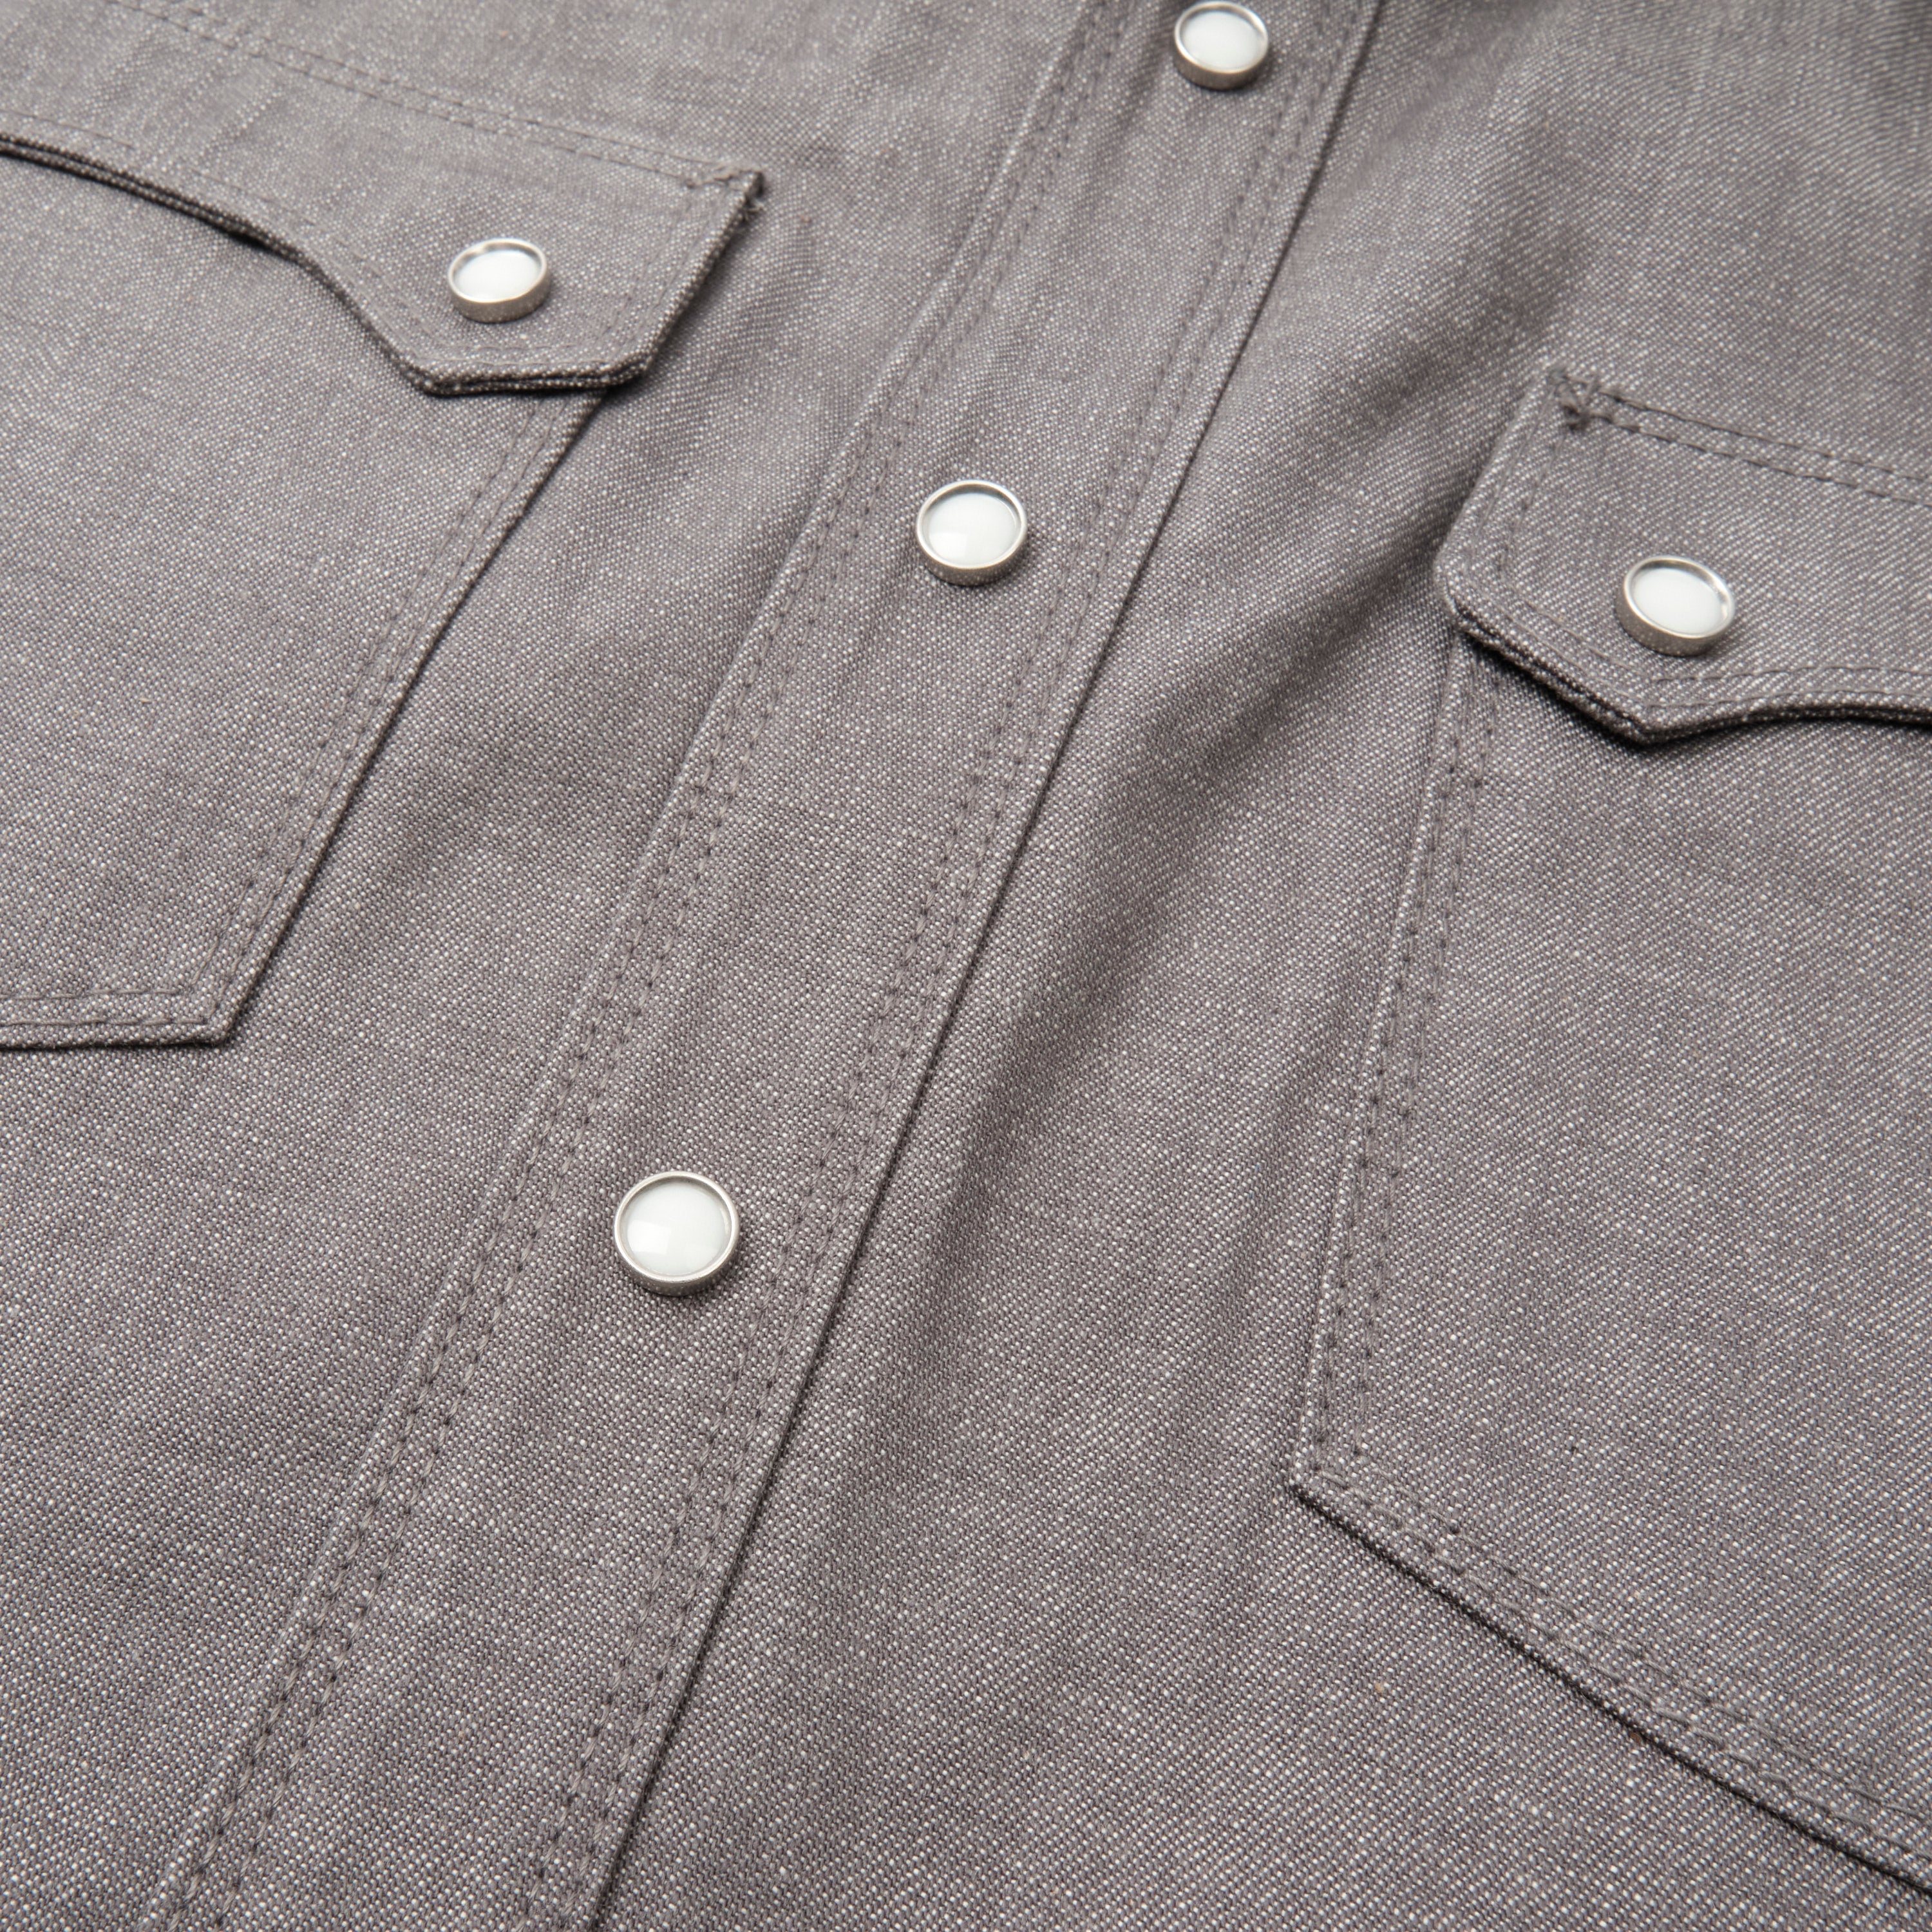 Freenote Cloth Modern Western Shirt - Harbor Grey Denim